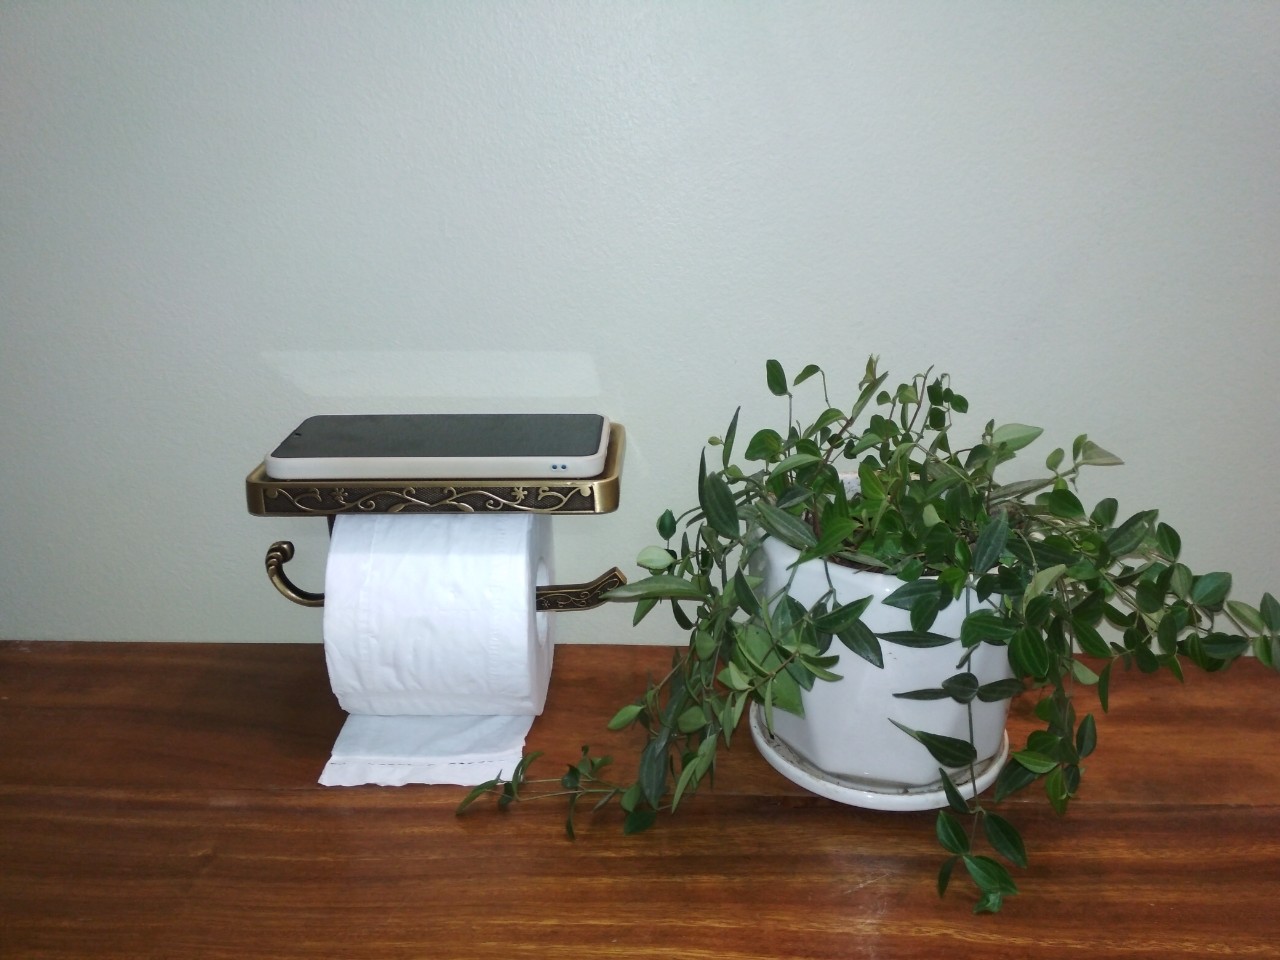 Giá treo giấy vệ sinh màu đồng hoa văn cổ điển.